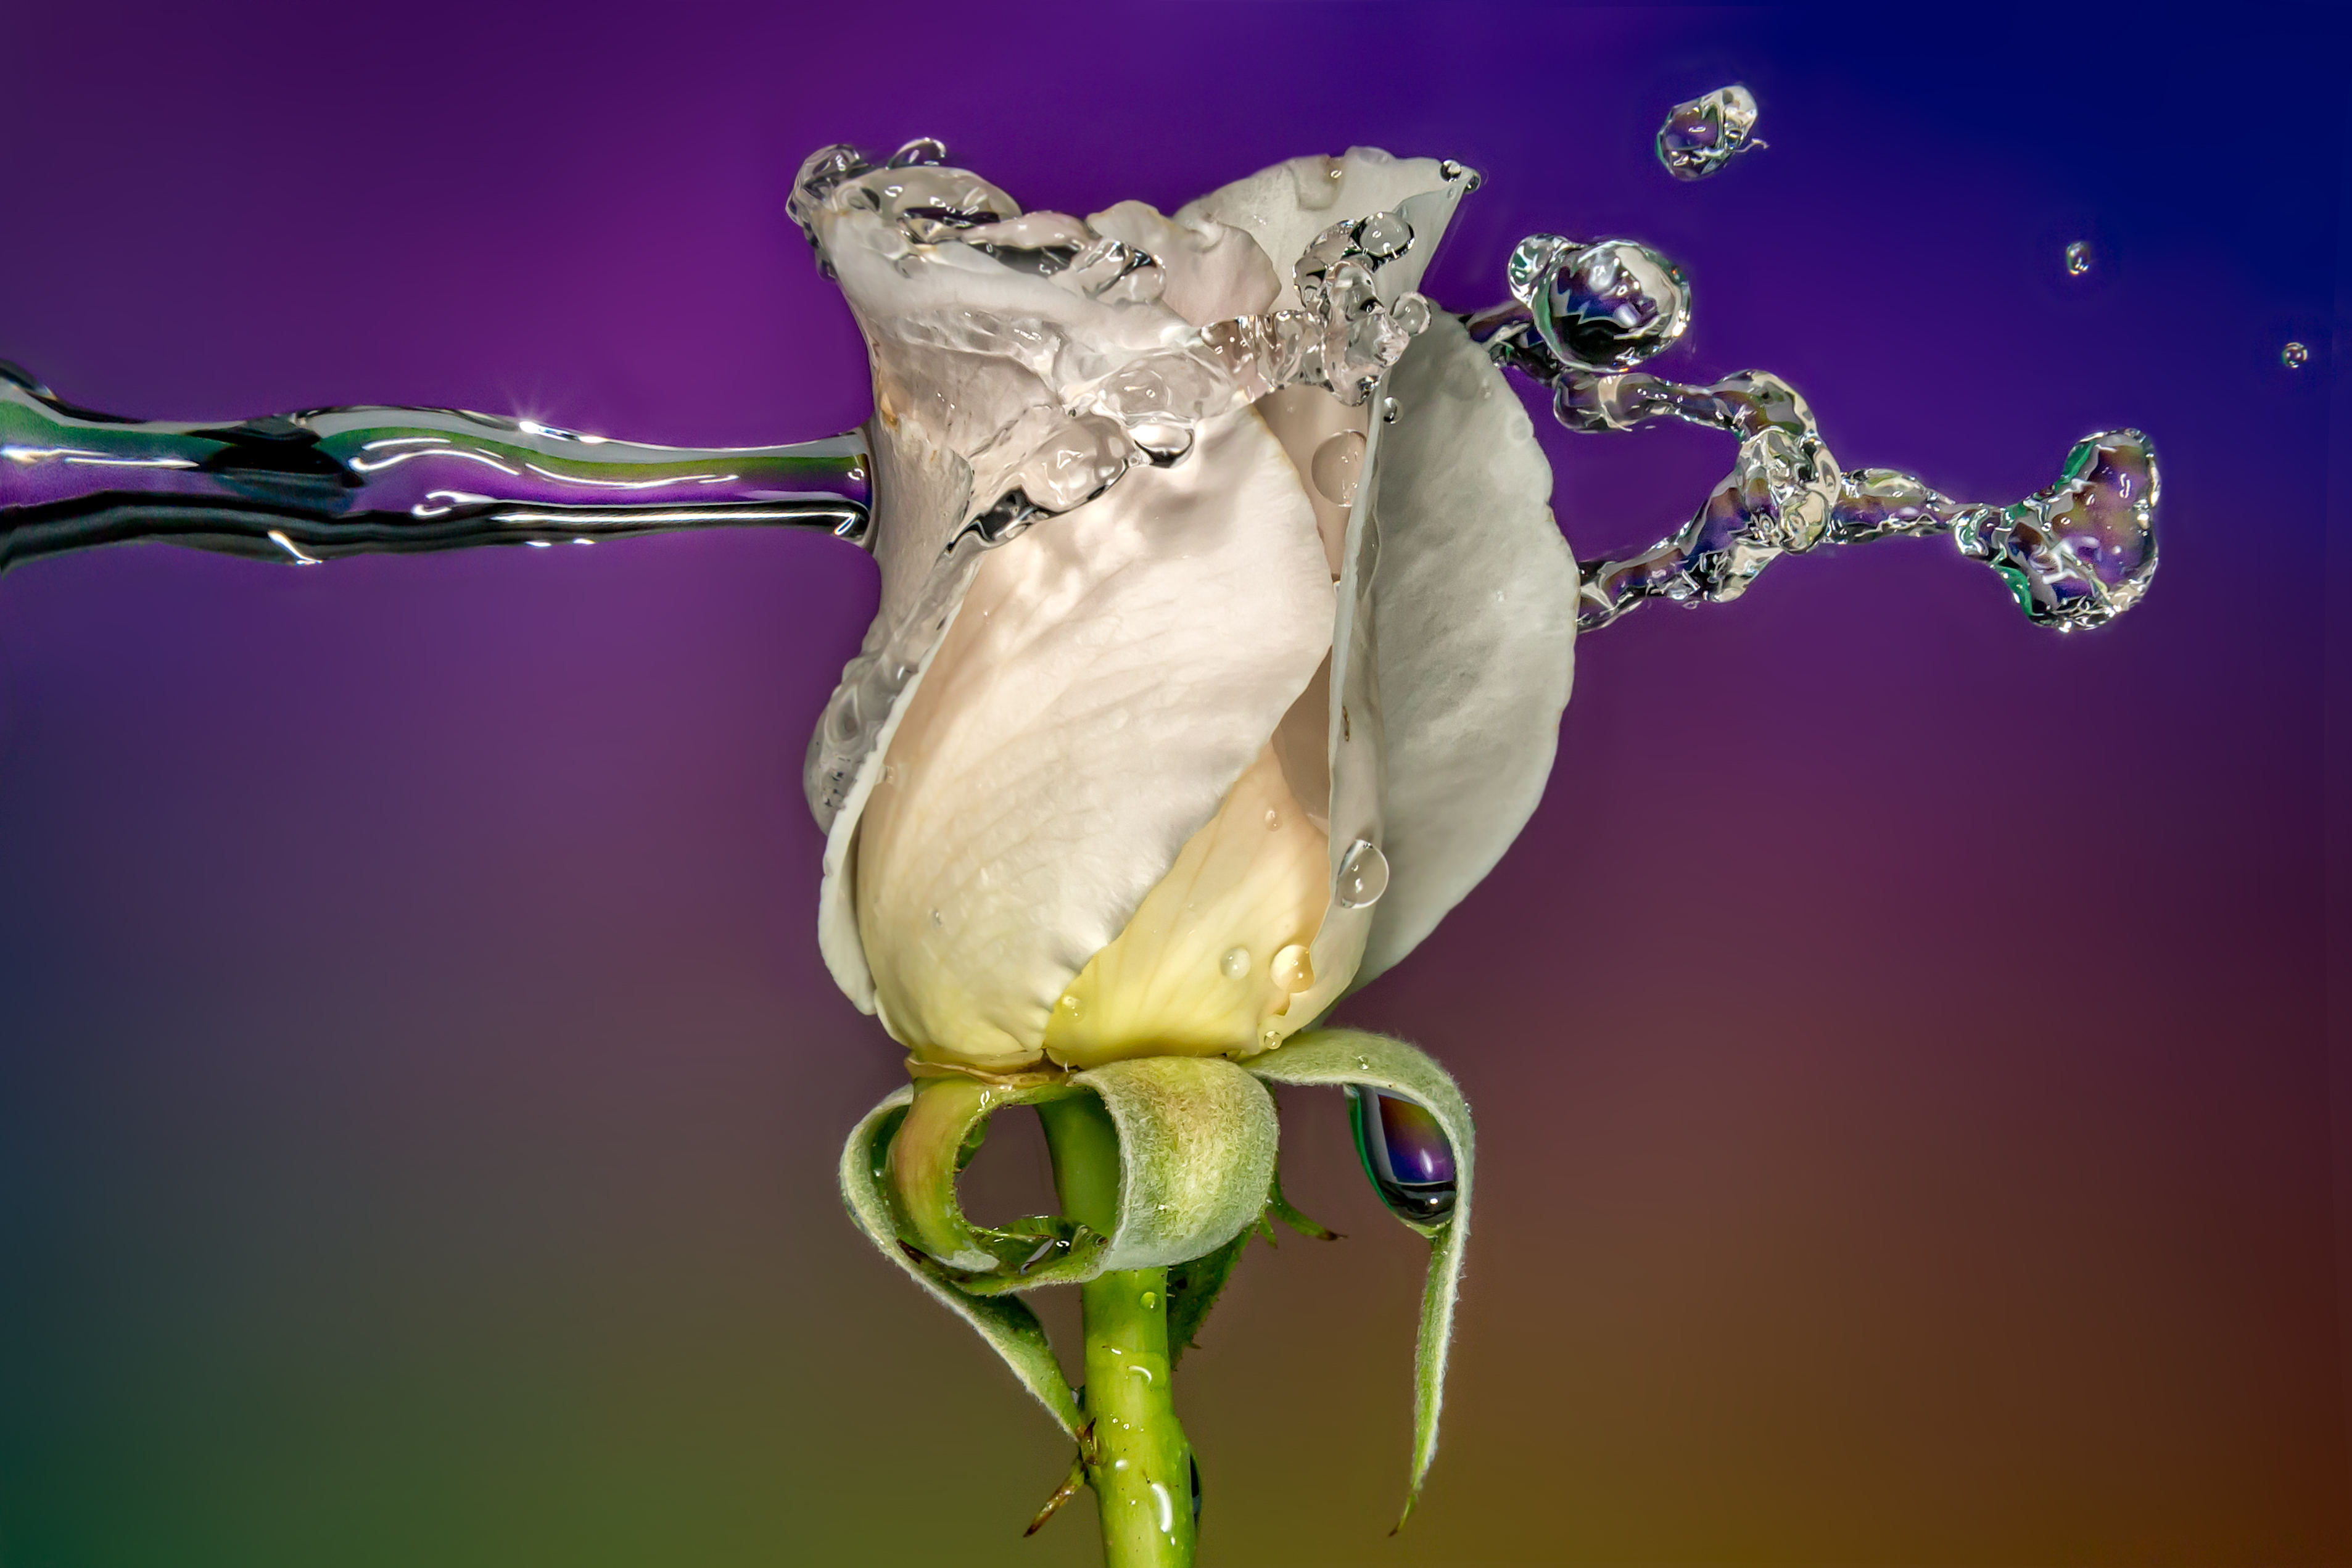 Капля воды на цветке